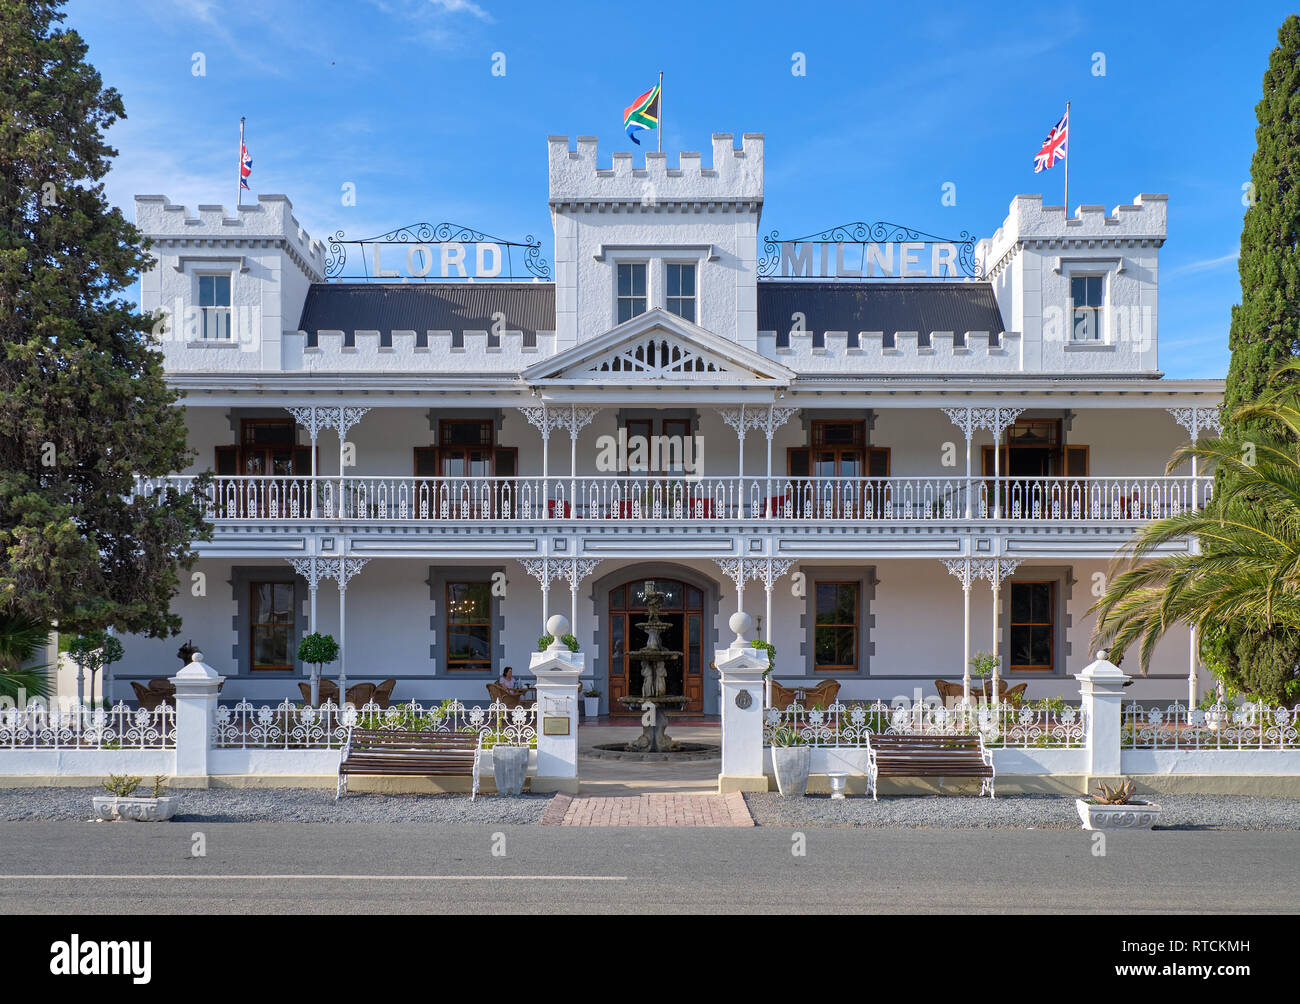 Historische Lord Milner Hotel ein testimonial zu viktorianischen Zeiten in der Karoo. Matjiesfontein, Südafrika Stockfoto